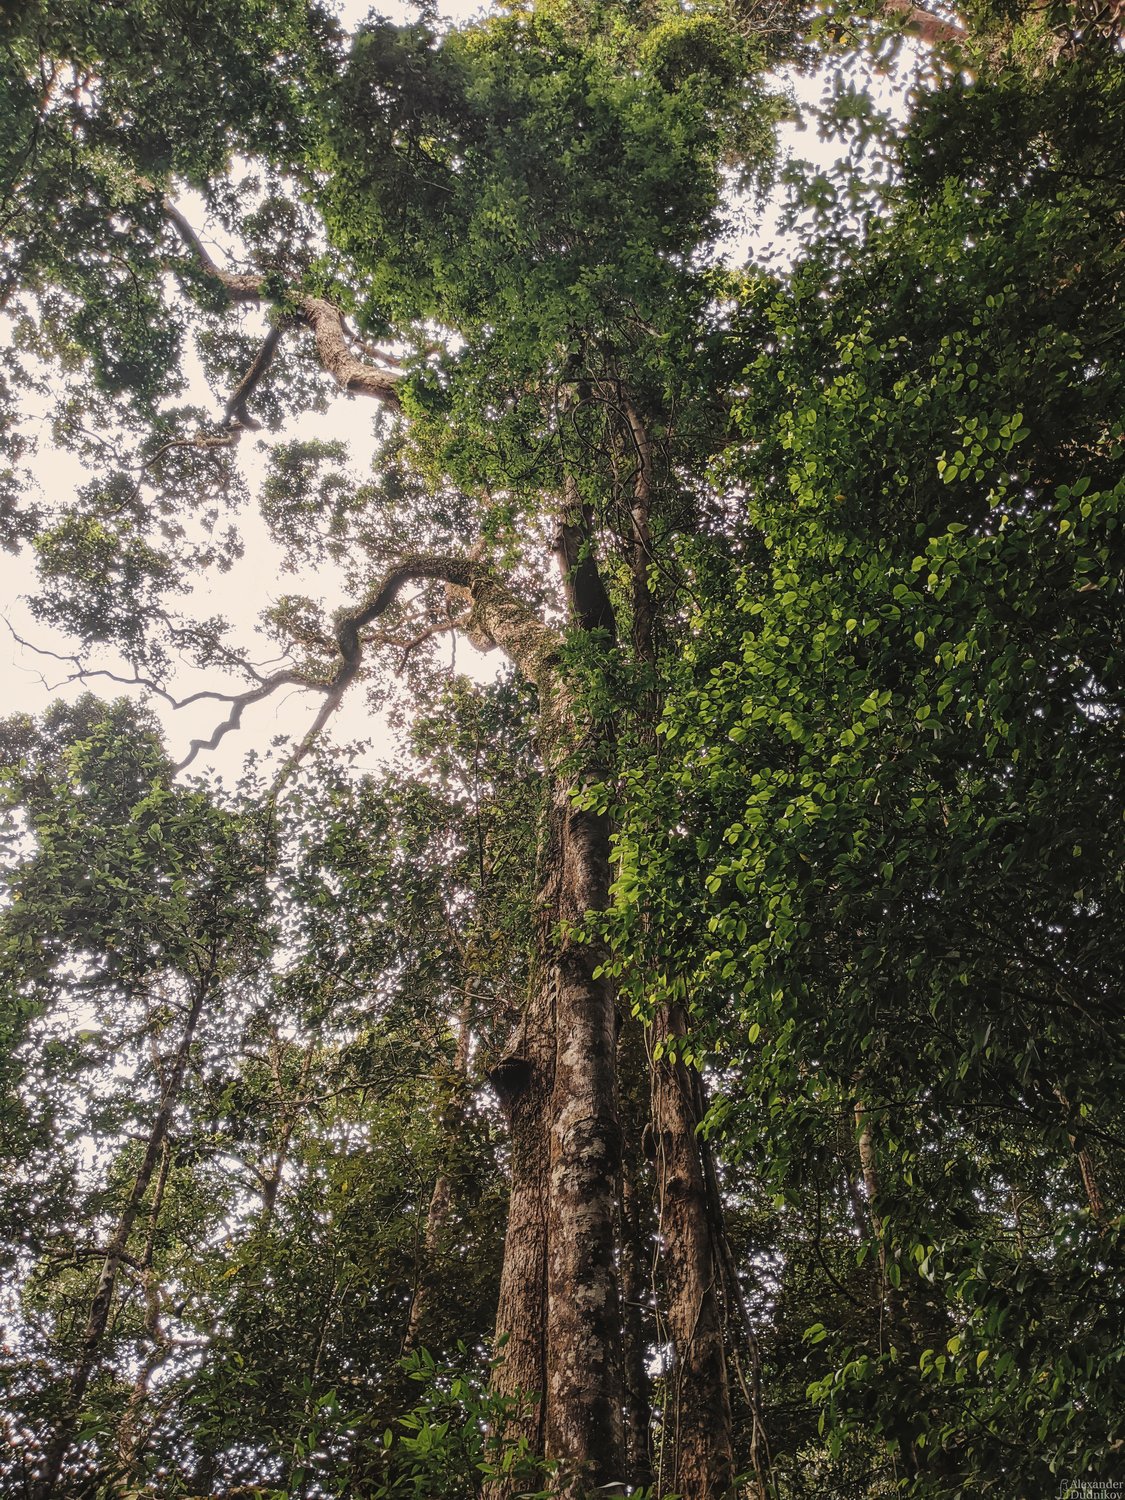 Гиганты дождевого леса Синхараджа